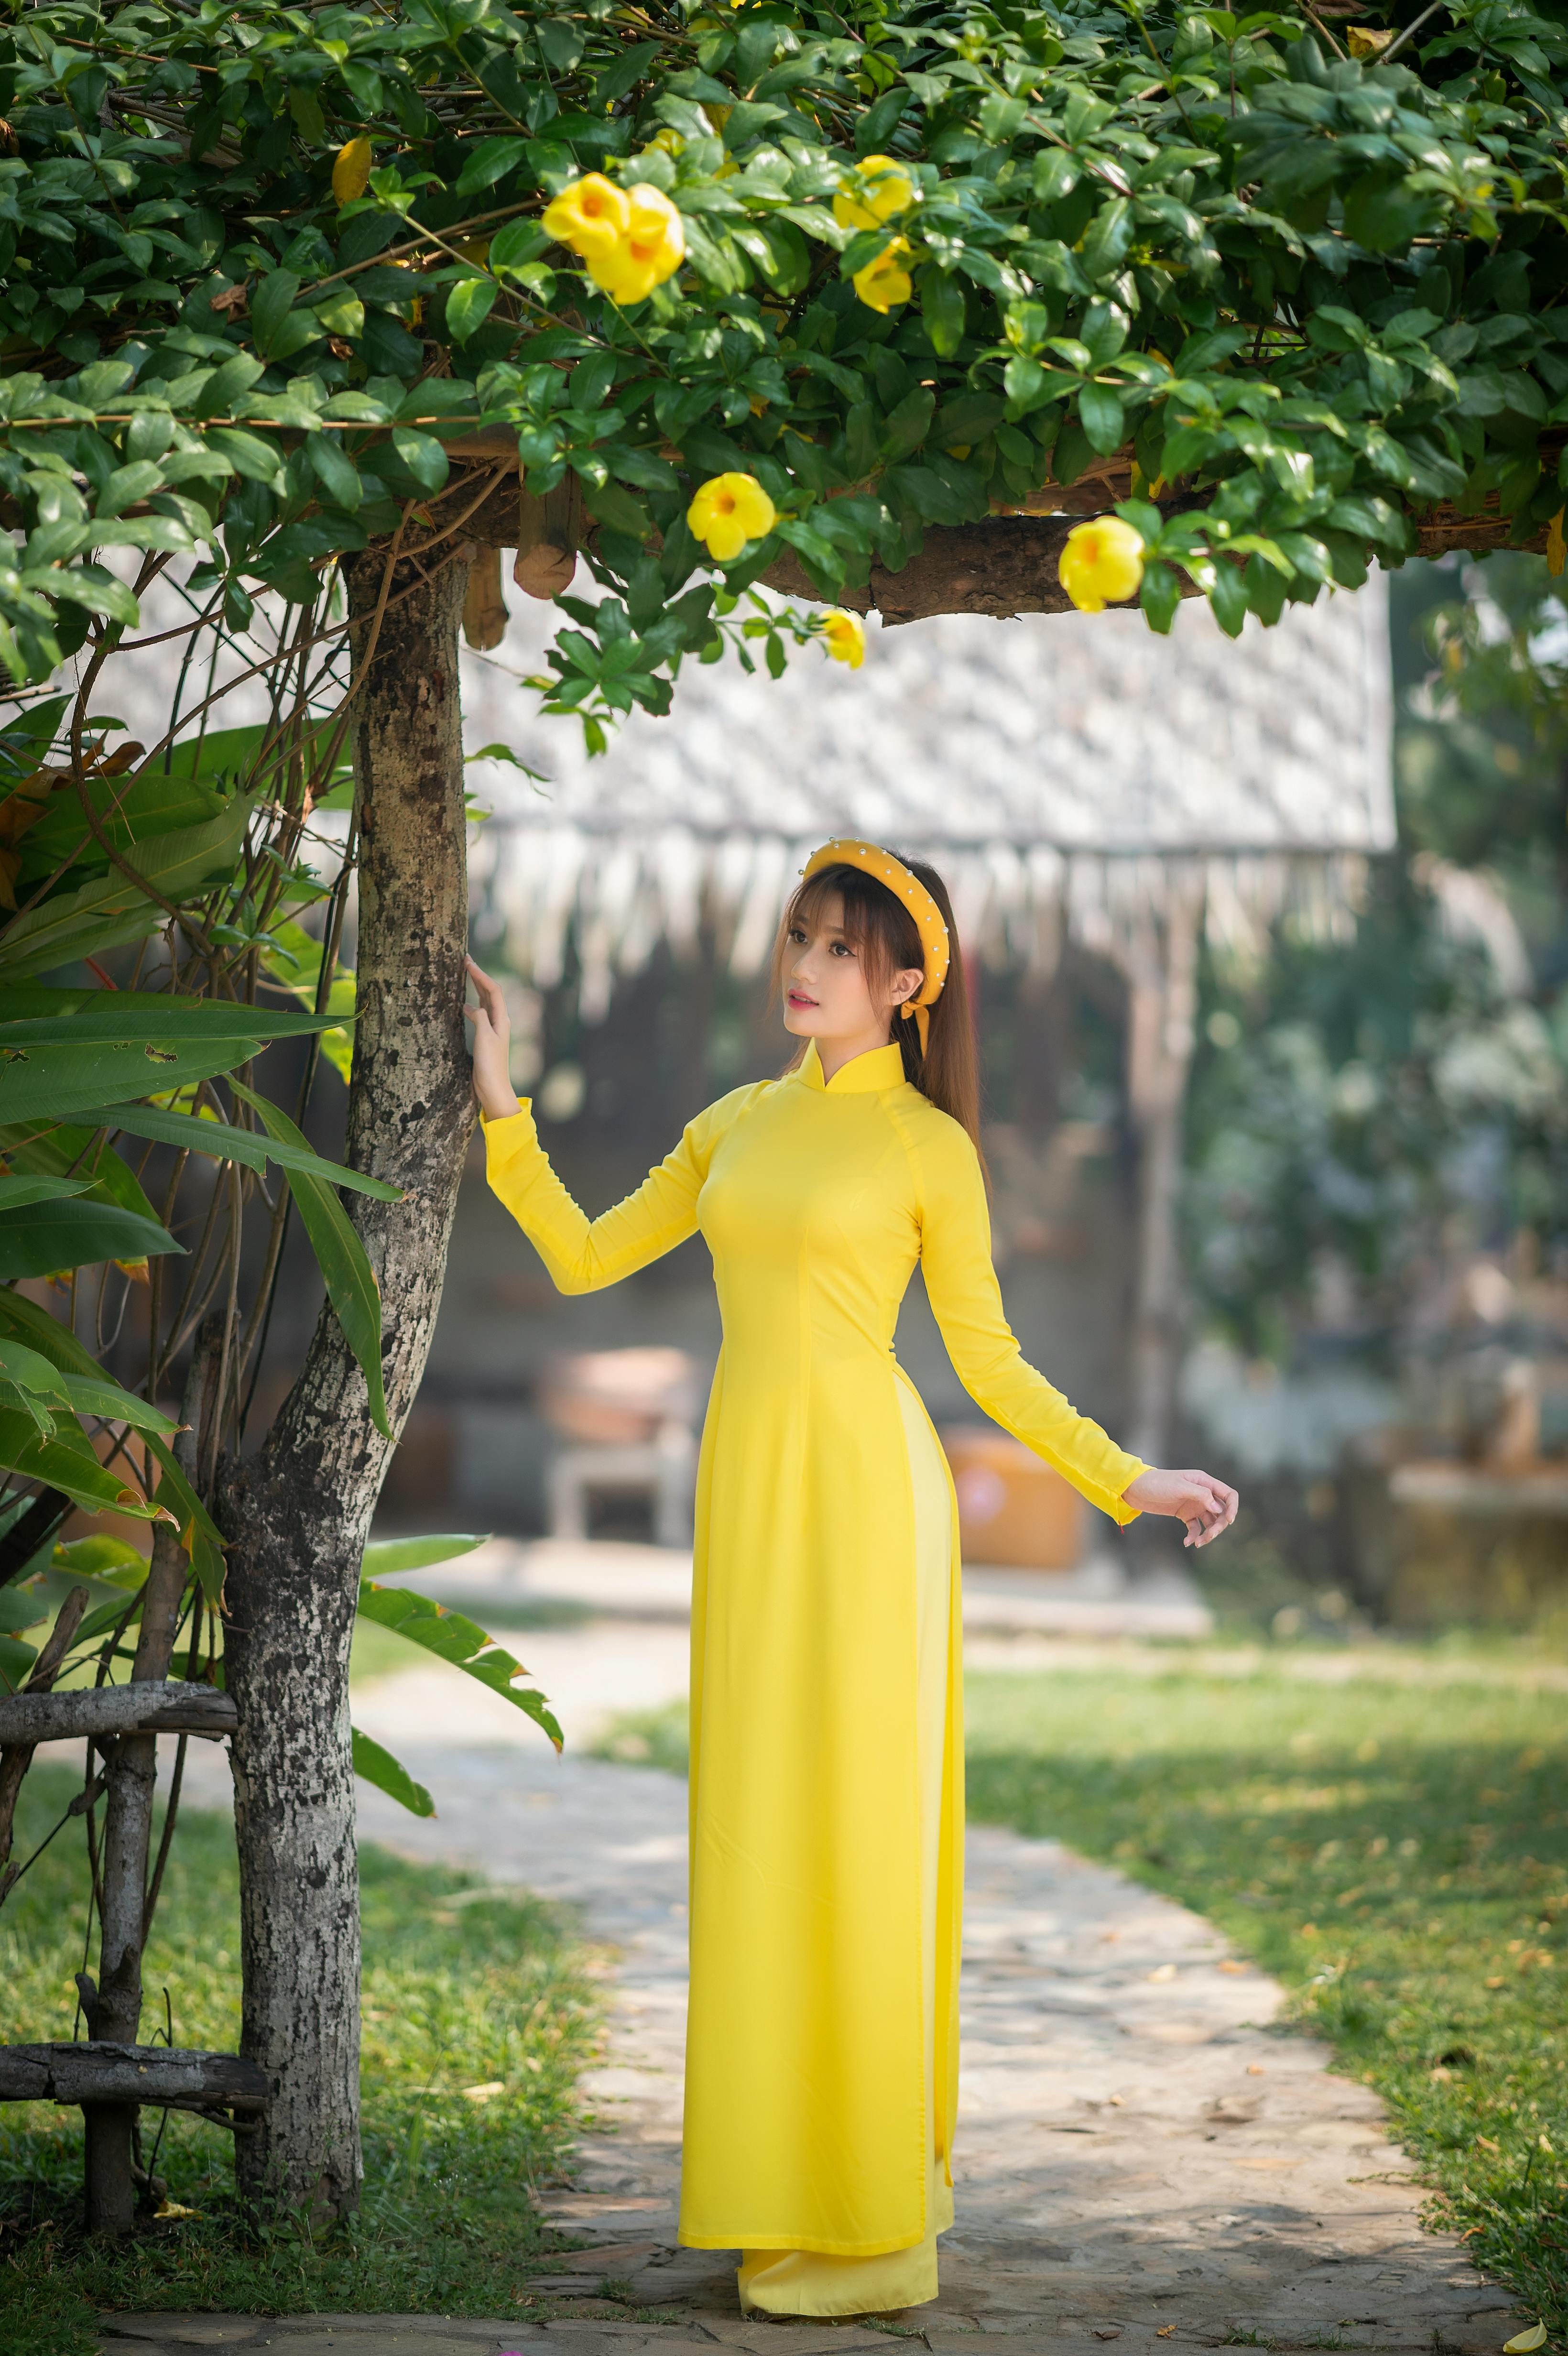 Những người phụ nữ Việt Nam luôn được biết đến là những người phụ nữ mạnh mẽ, độc lập, và tự tin. Họ luôn tỏa sáng với vẻ đẹp tự nhiên và cá tính riêng. Để khám phá sự tuyệt vời của những người đàn bà Việt Nam, hãy xem ảnh liên quan.